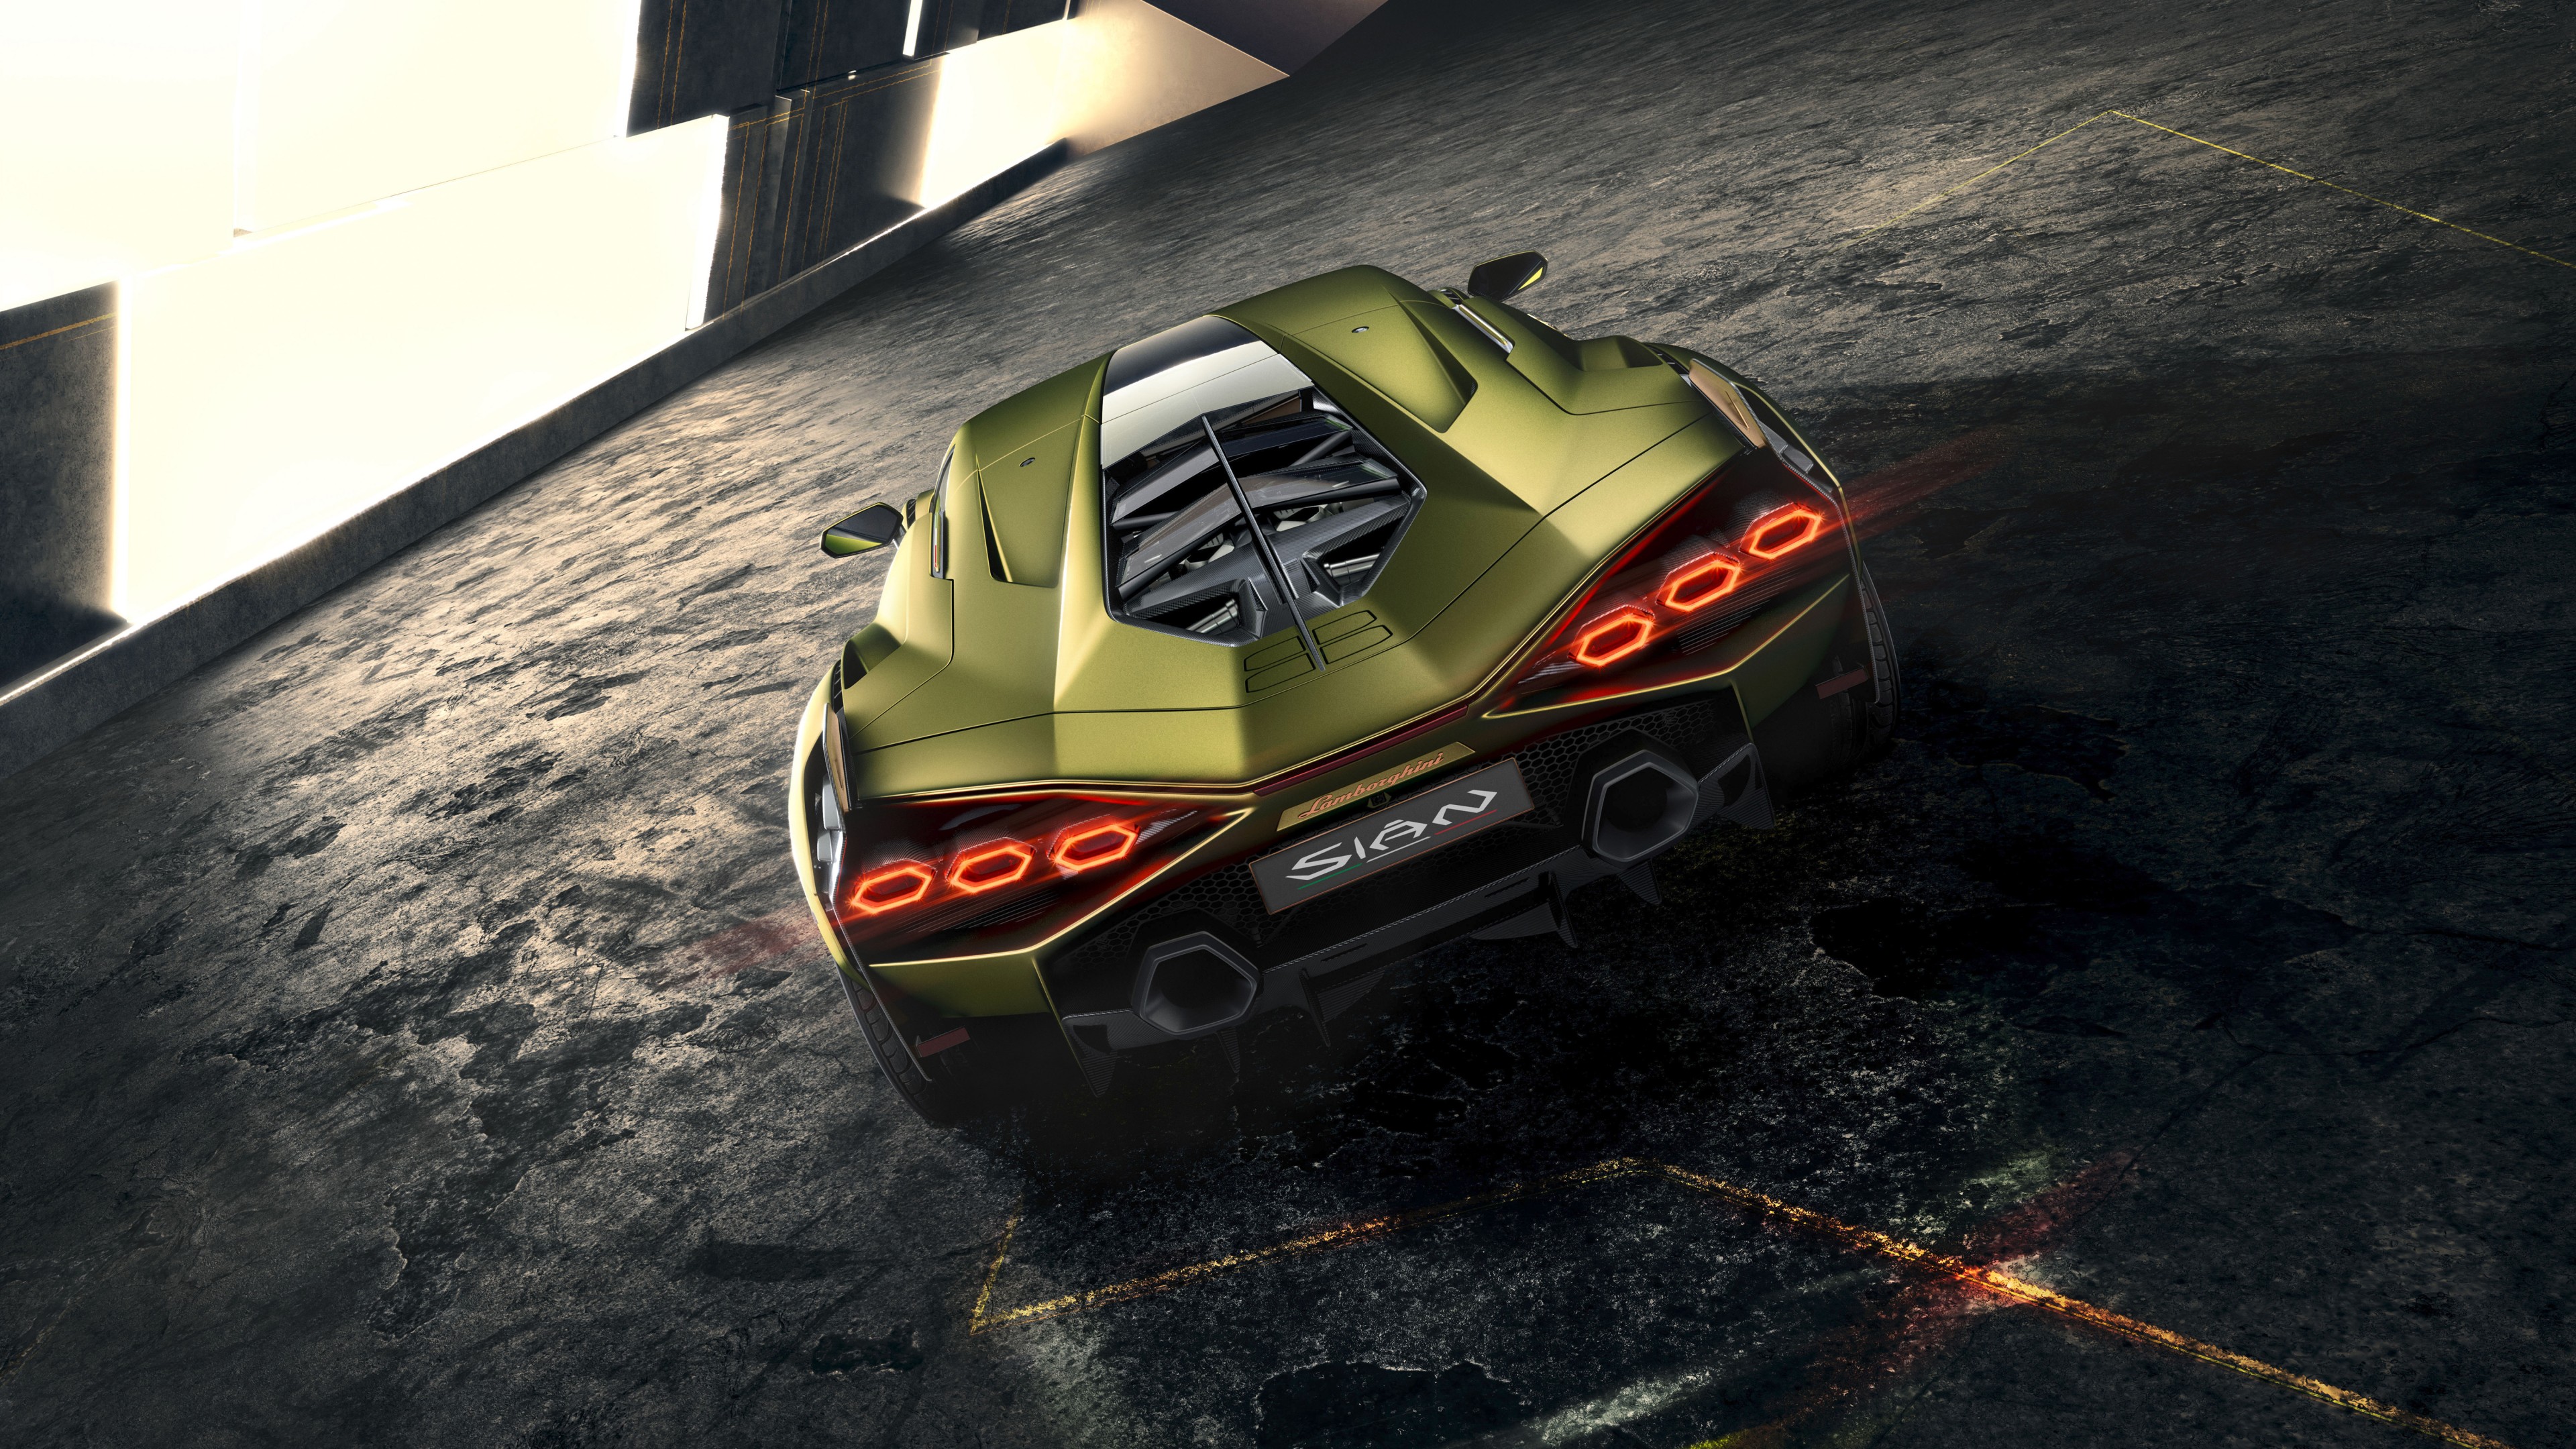 Lamborghini Sian 2019 4K 8 Wallpaper | HD Car Wallpapers | ID #13137